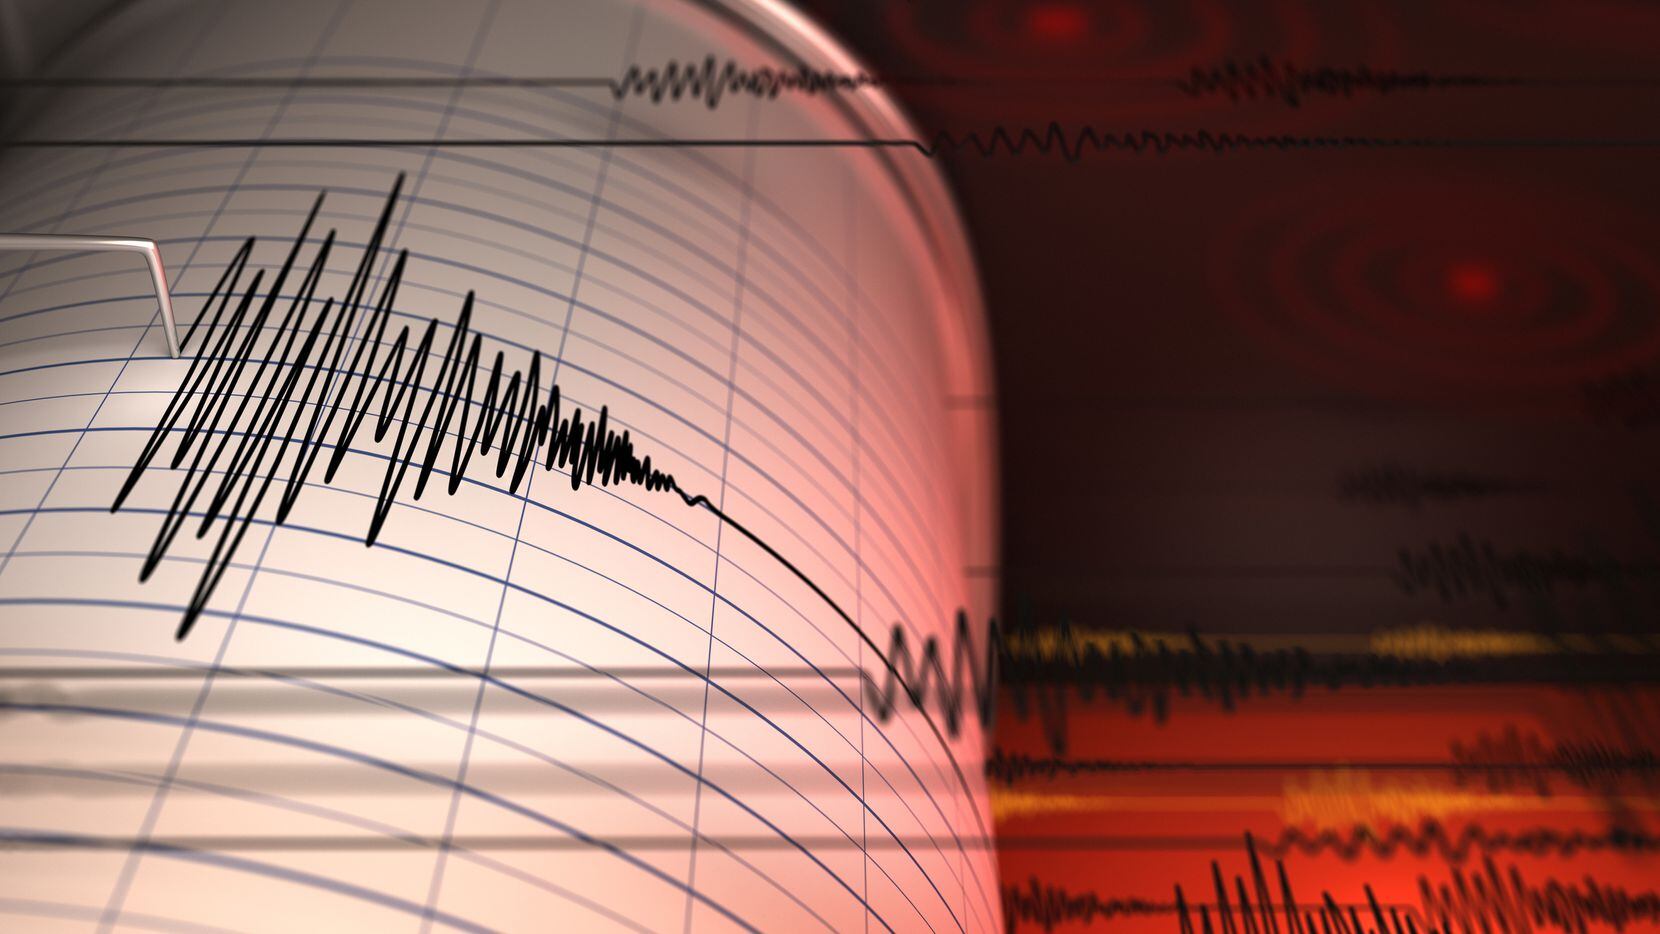 Un sismo con magnitud de 7.1 grados sacudió varios estados de México